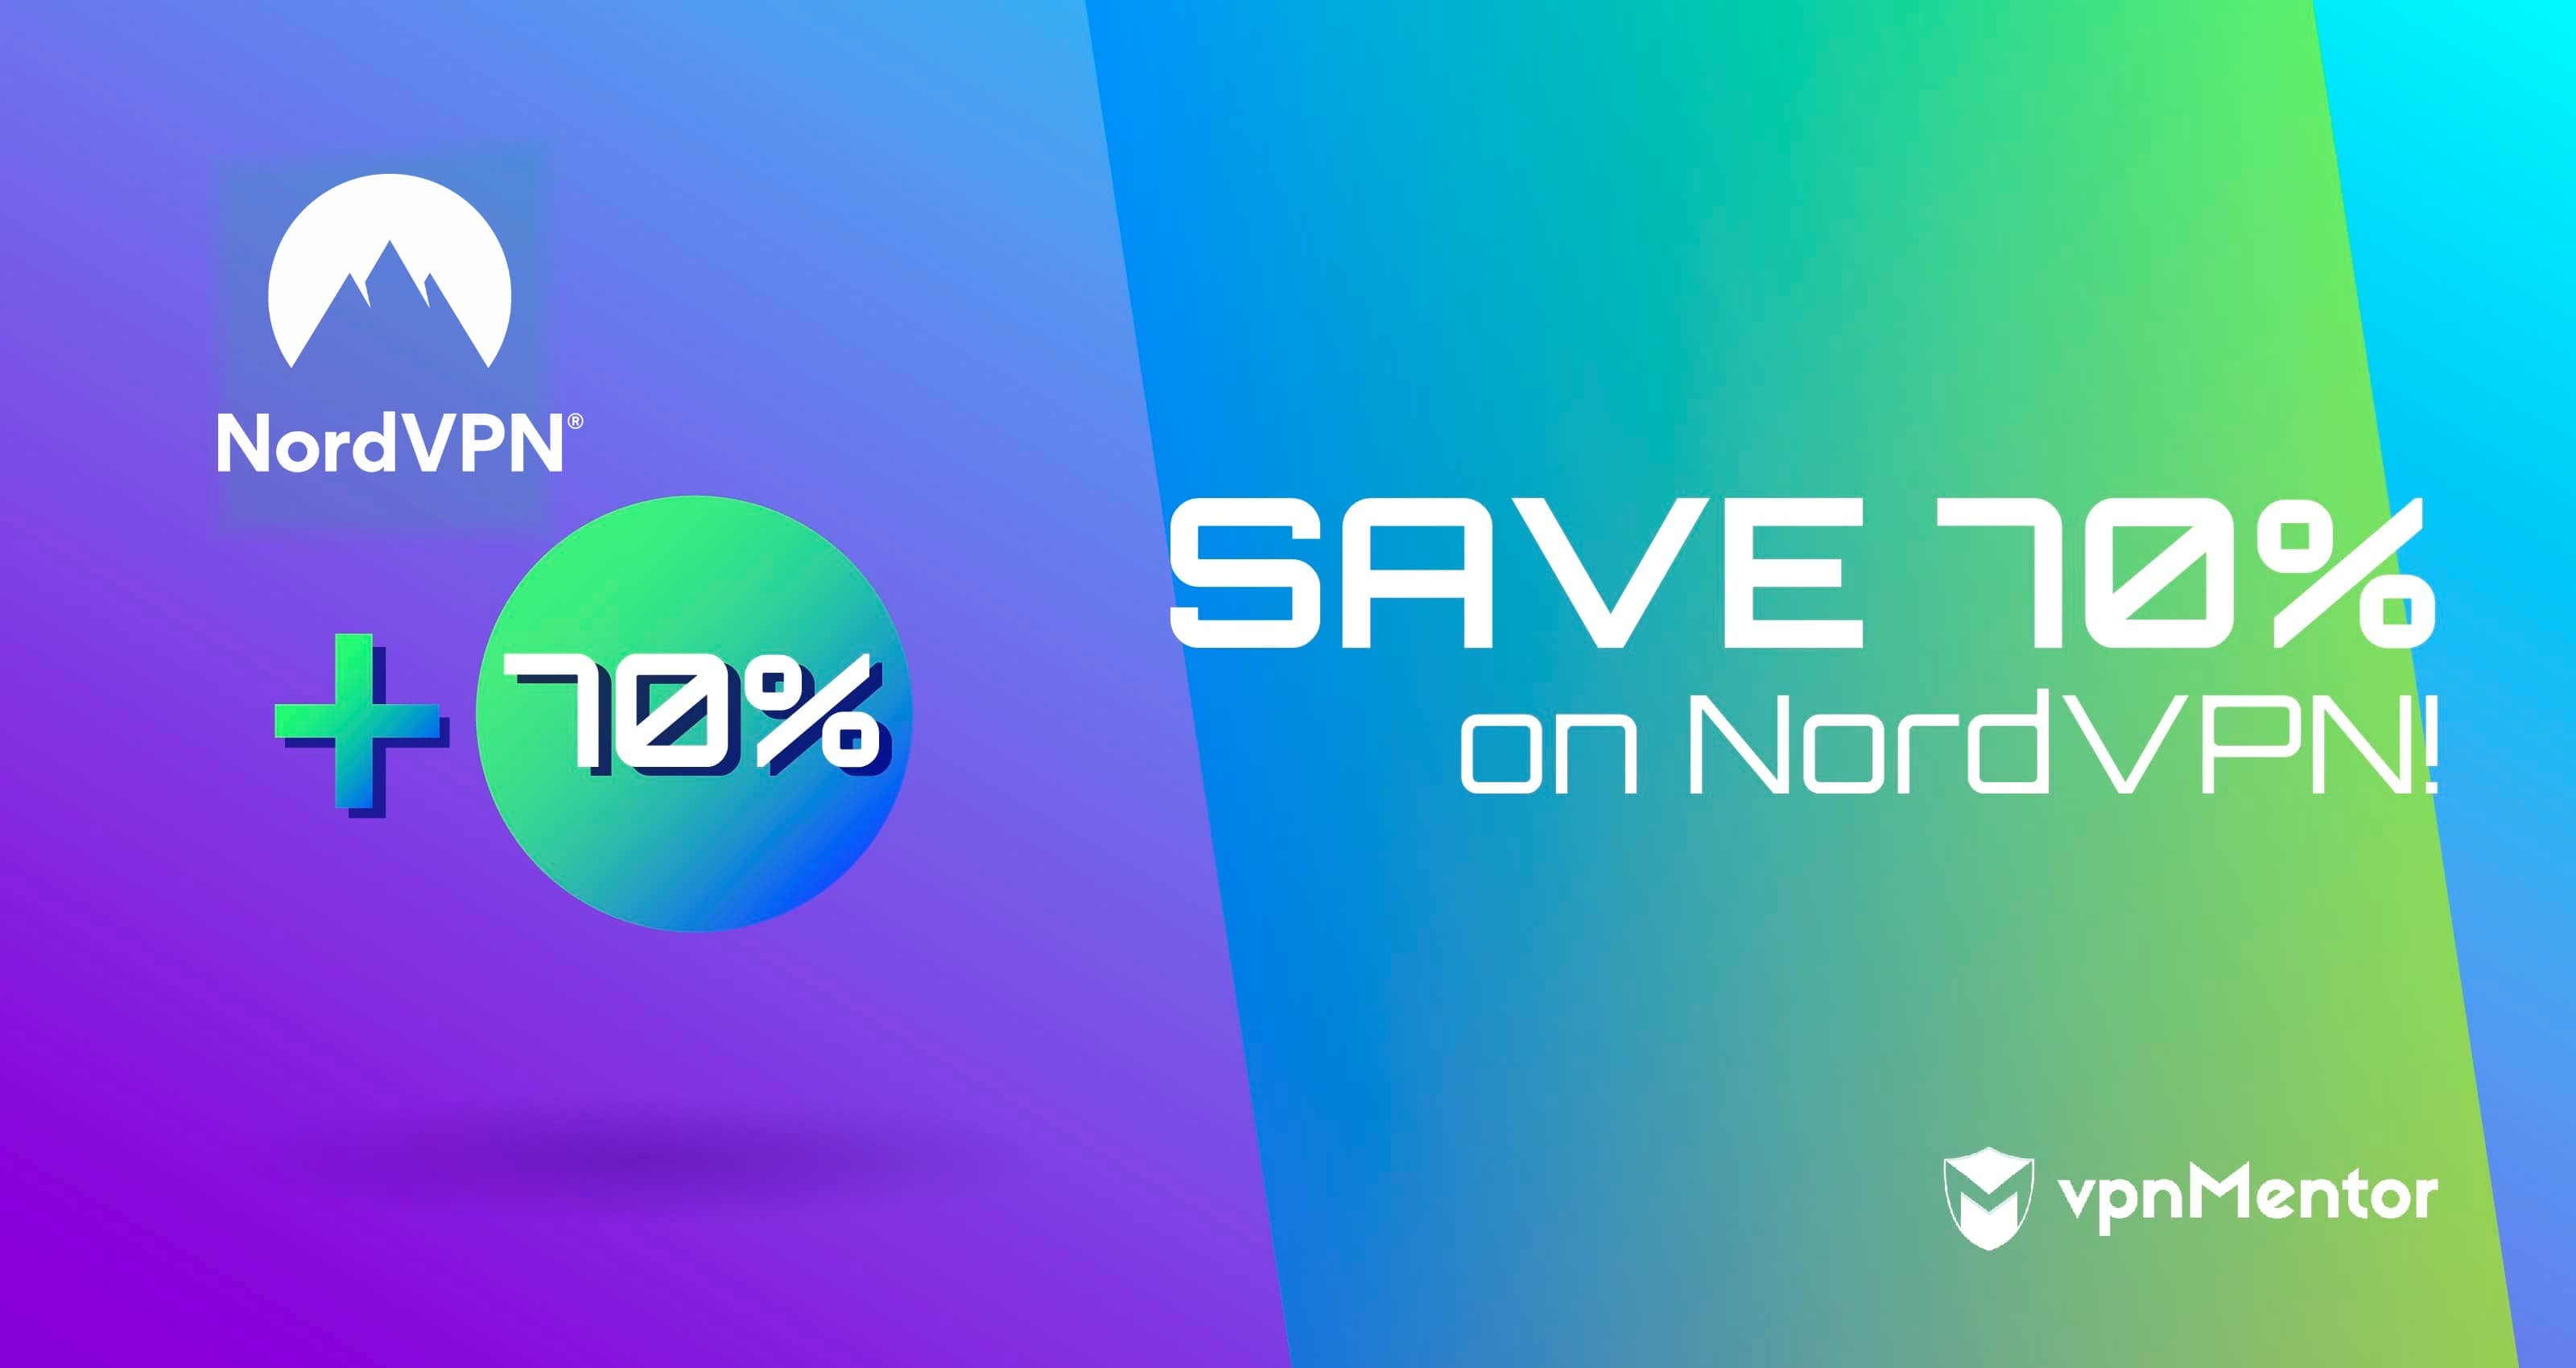 Phiếu giảm giá NordVPN 2022 – Tiết kiệm 70%! Tránh CÁC ƯU ĐÃI GIẢ MẠO